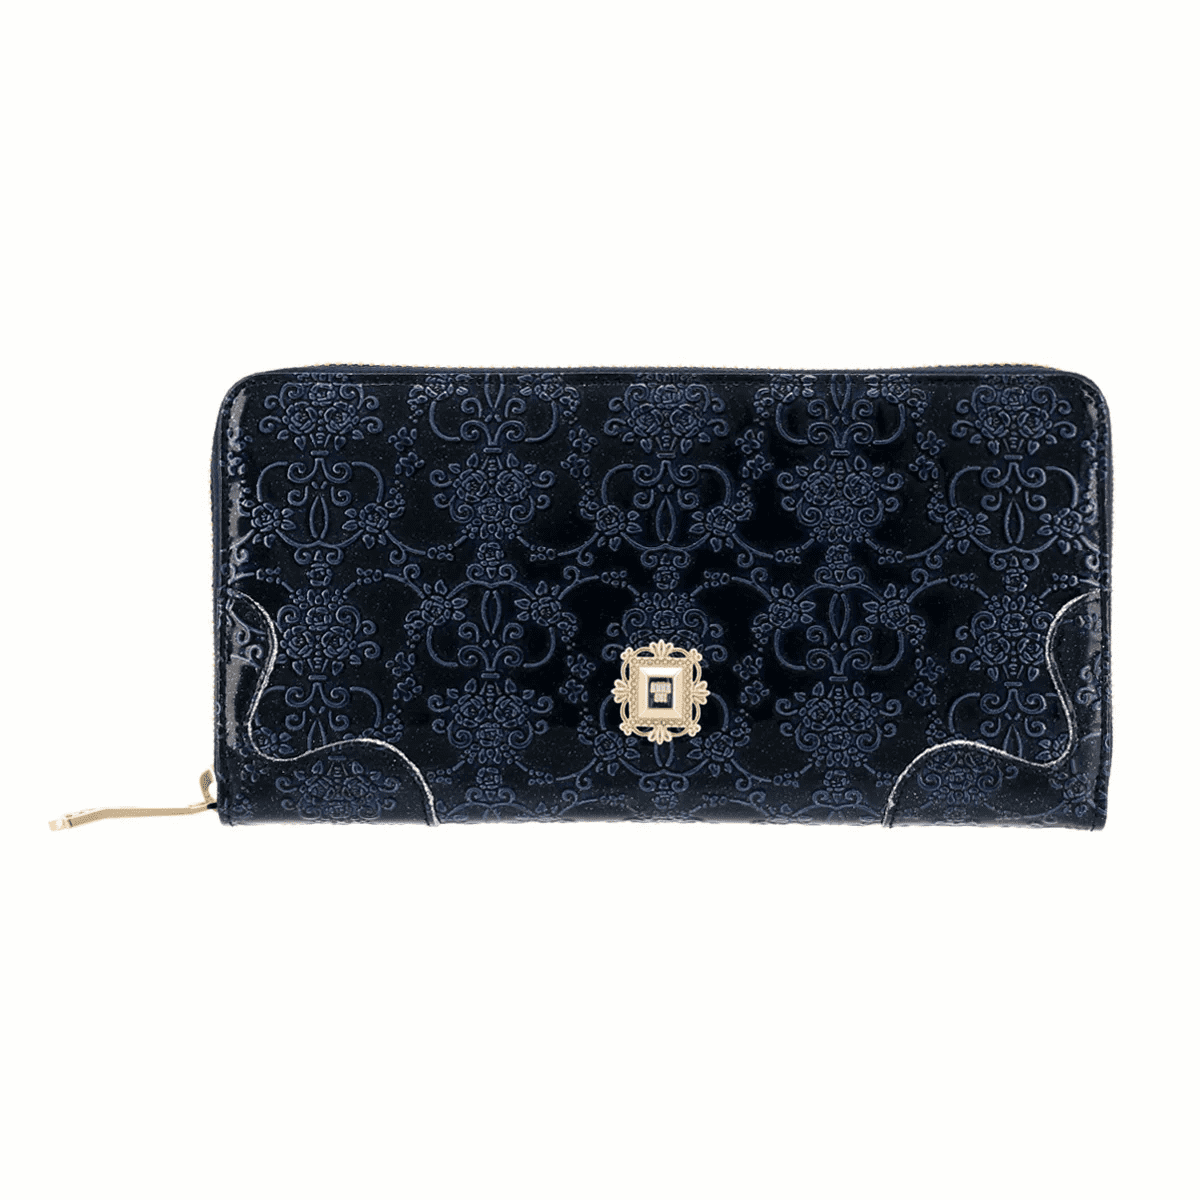 誕生日プレゼント・アナスイ(ANNA SUI)のレディース財布